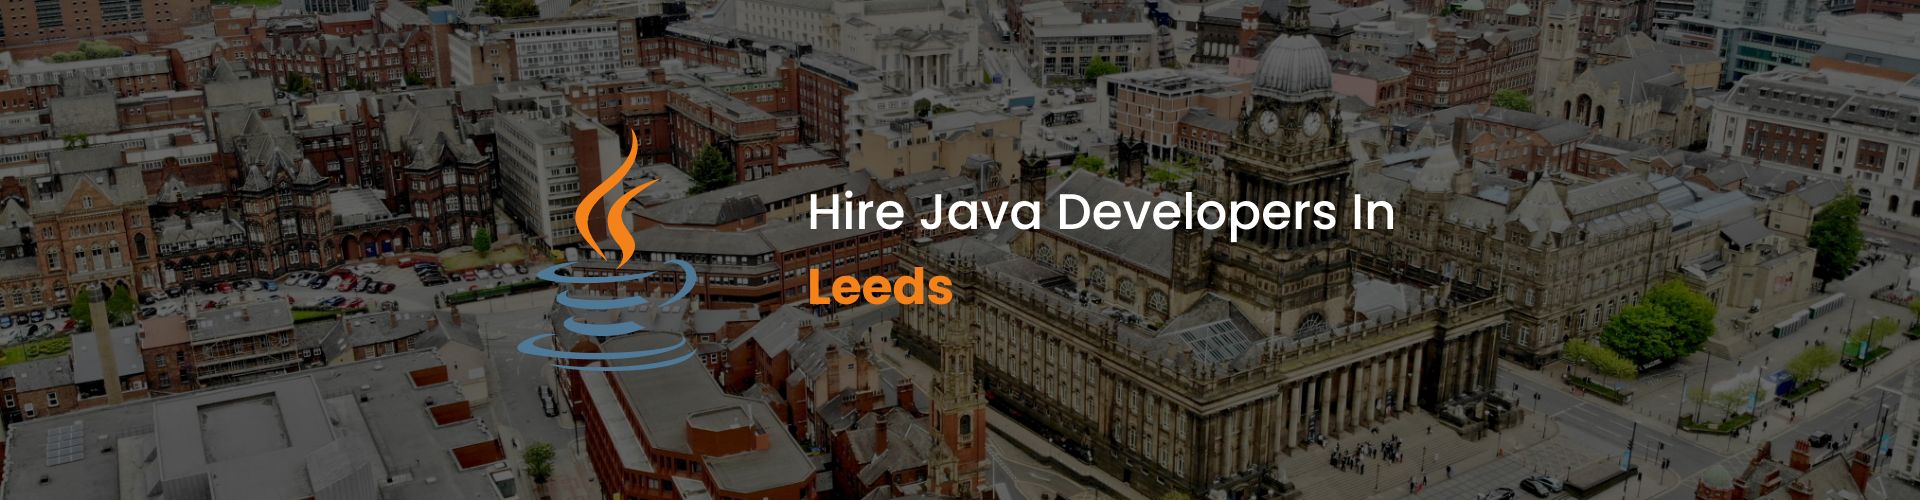 hire java developers in leeds